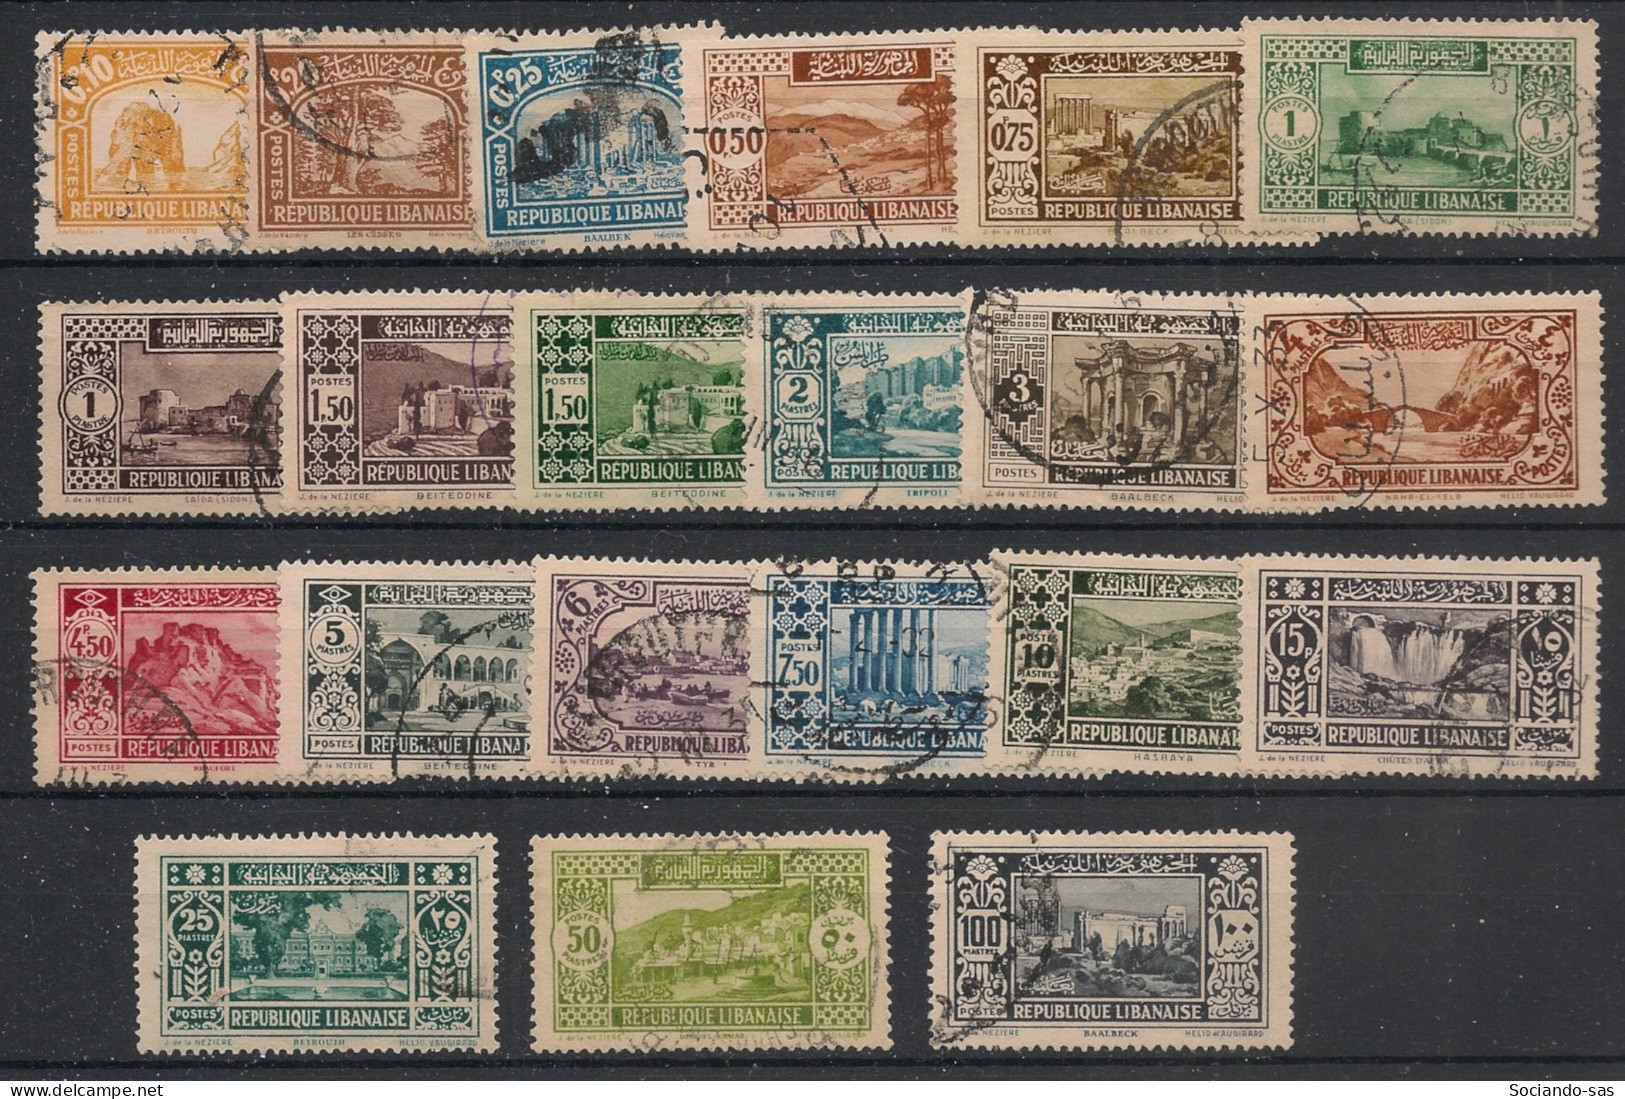 GRAND LIBAN - 1930-35 - N°YT. 128 à 148 - Série Complète - Oblitéré / Used - Oblitérés